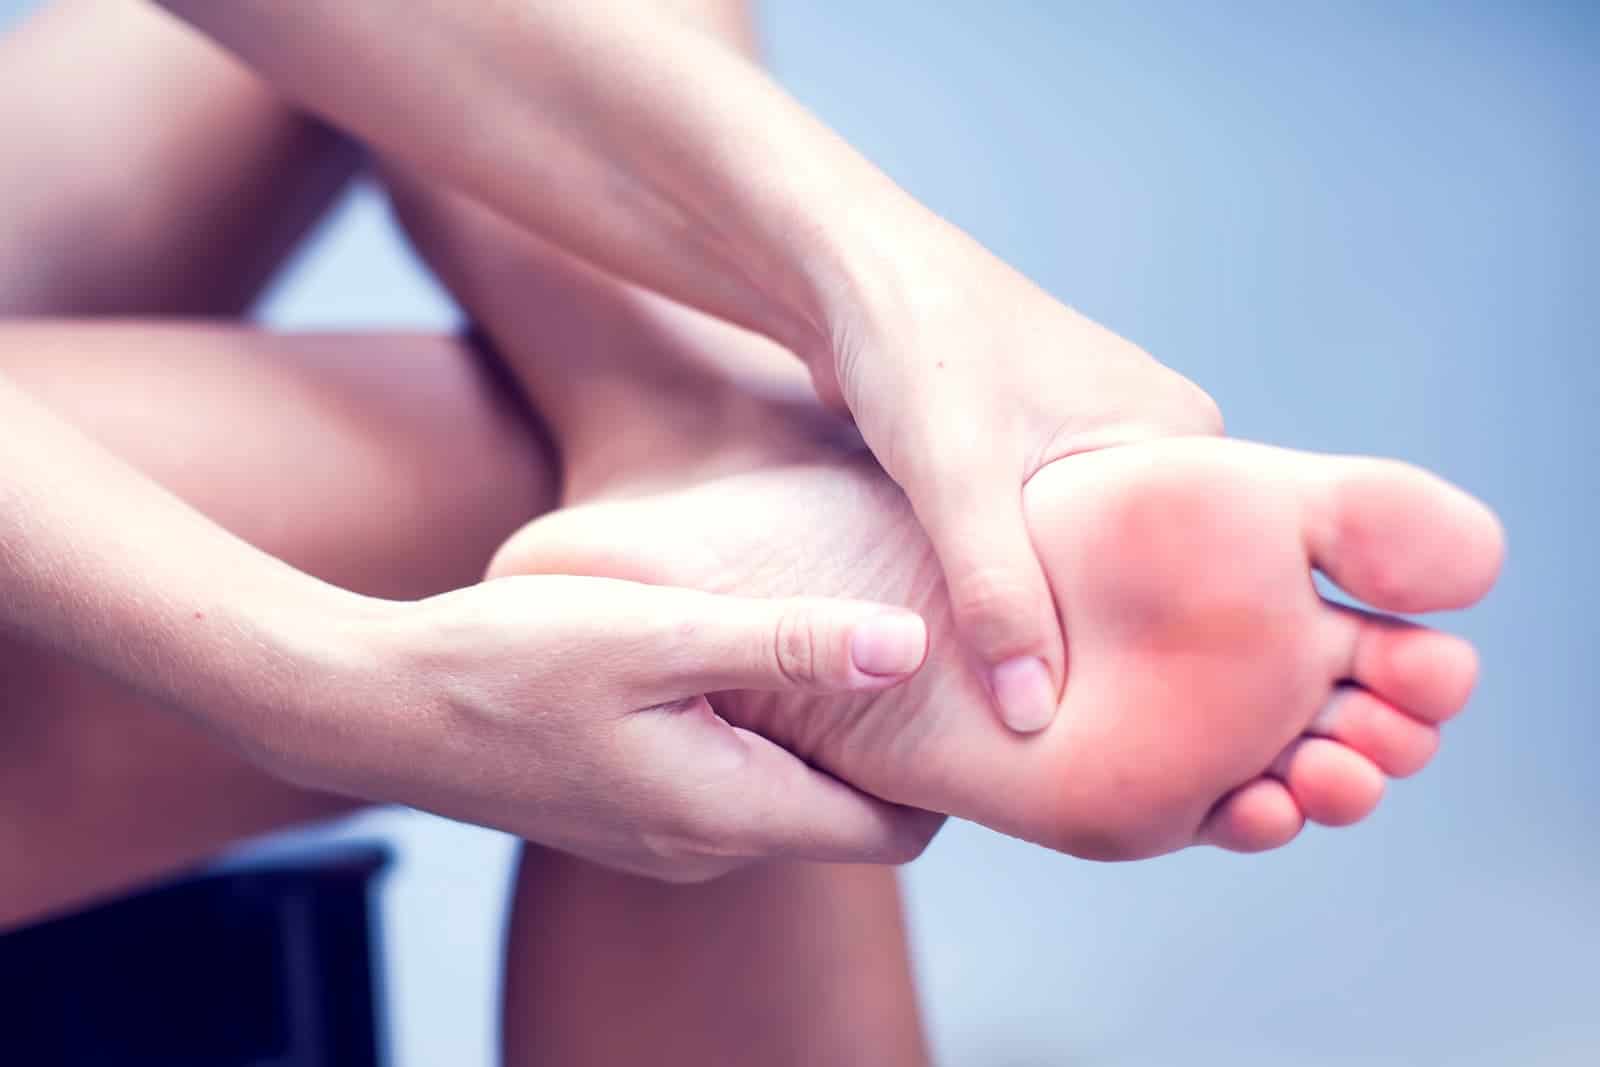 لا تتجاهل! هذه ستة أسباب لألم القدم التي نادرًا ما تتحقق